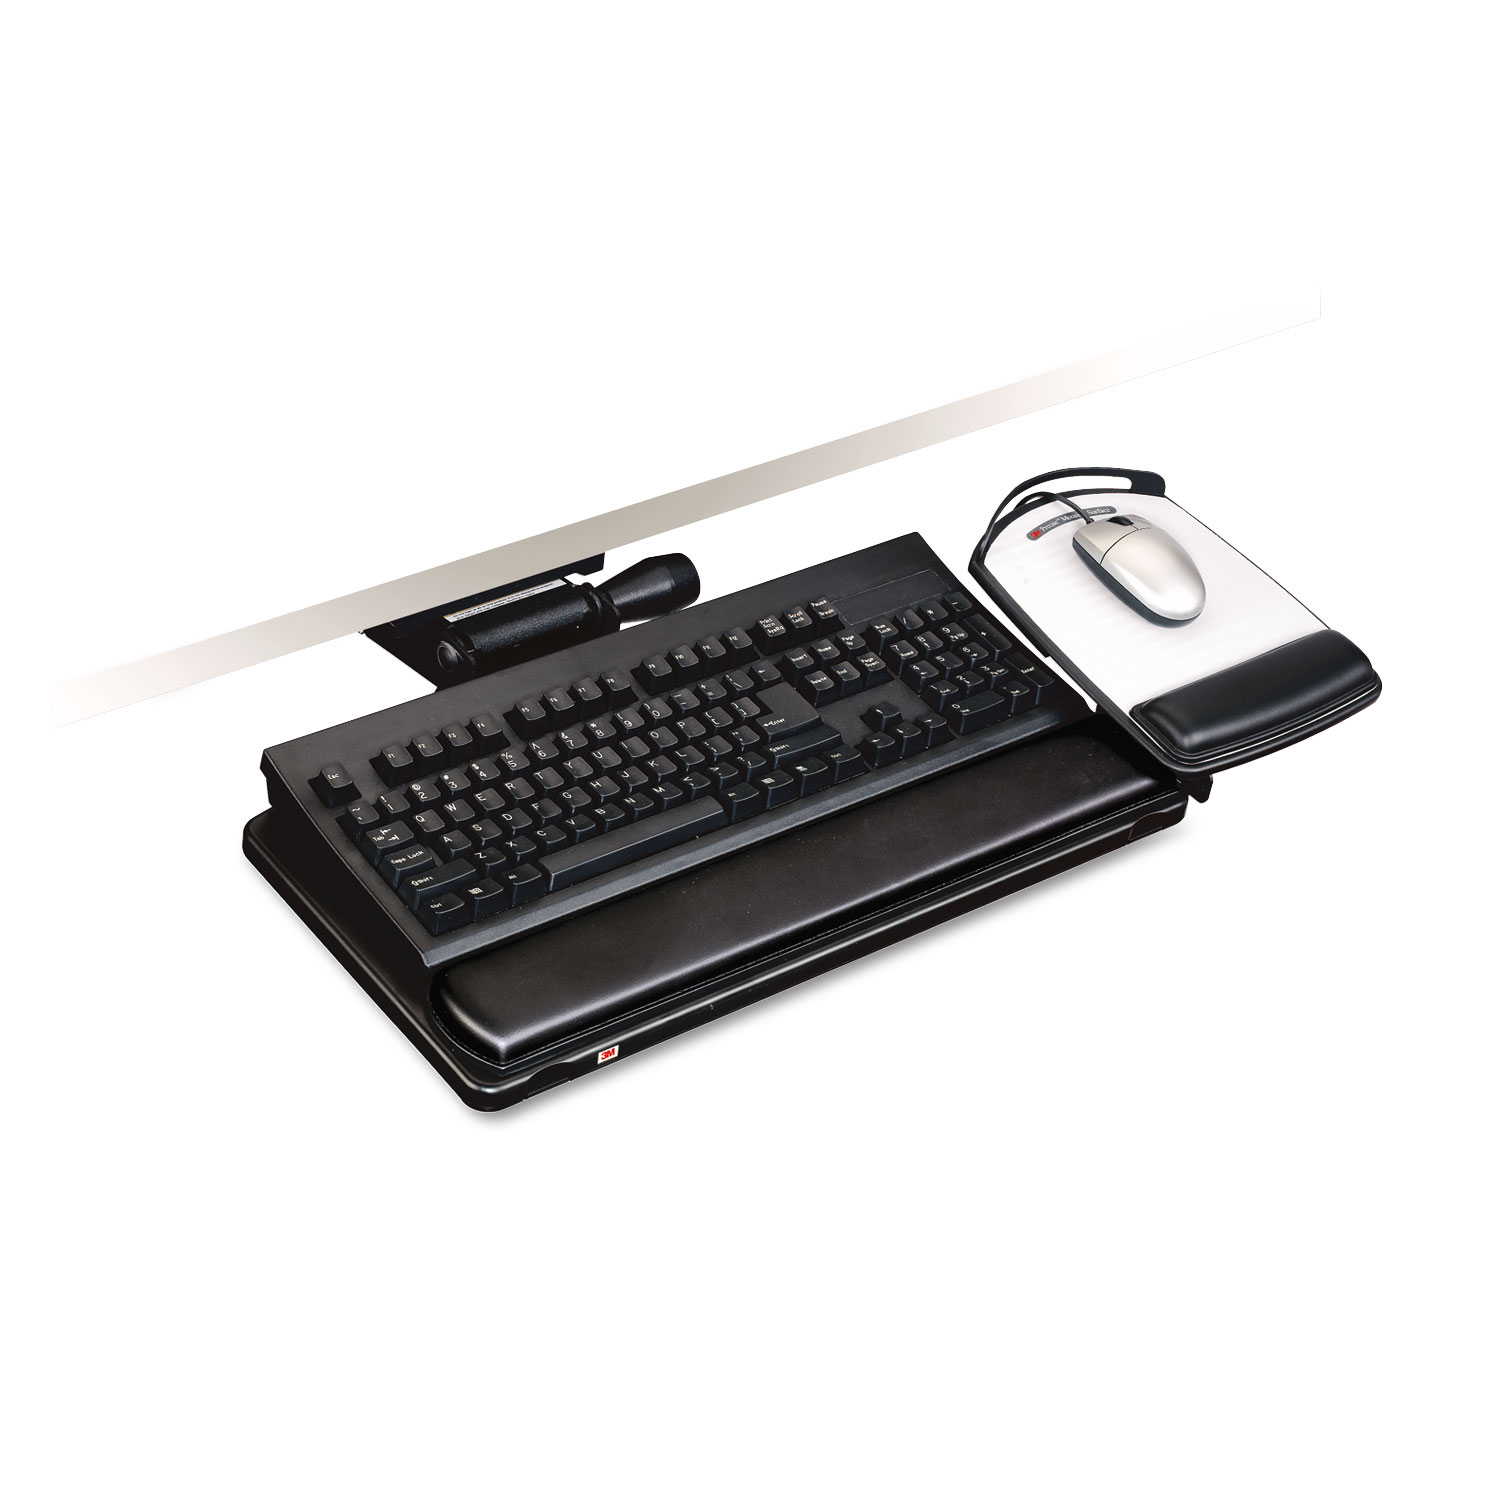  3M AKT150LE Easy Adjust Keyboard Tray, Highly Adjustable Platform, 23 Track, Black (MMMAKT150LE) 